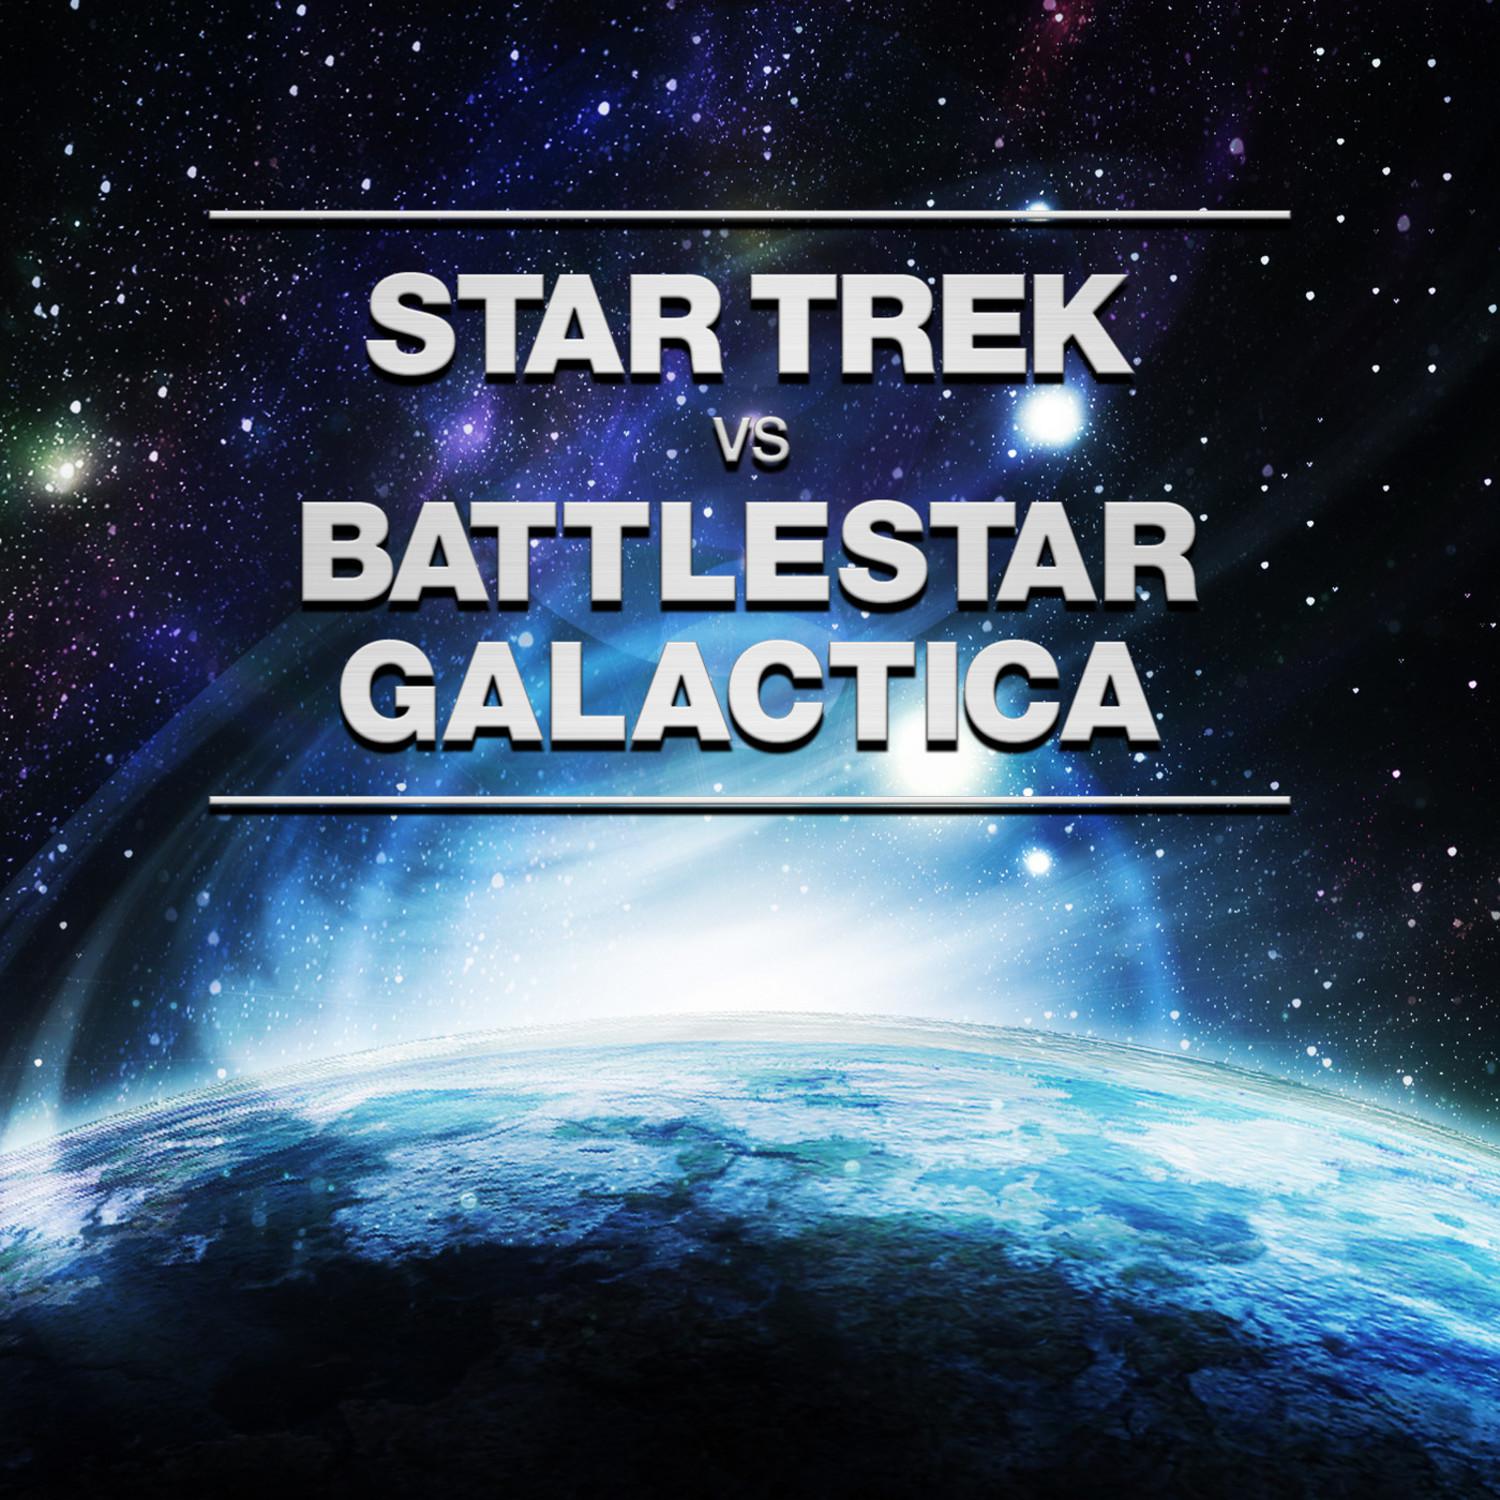 Battlestar Galactica: The Cylon Trap